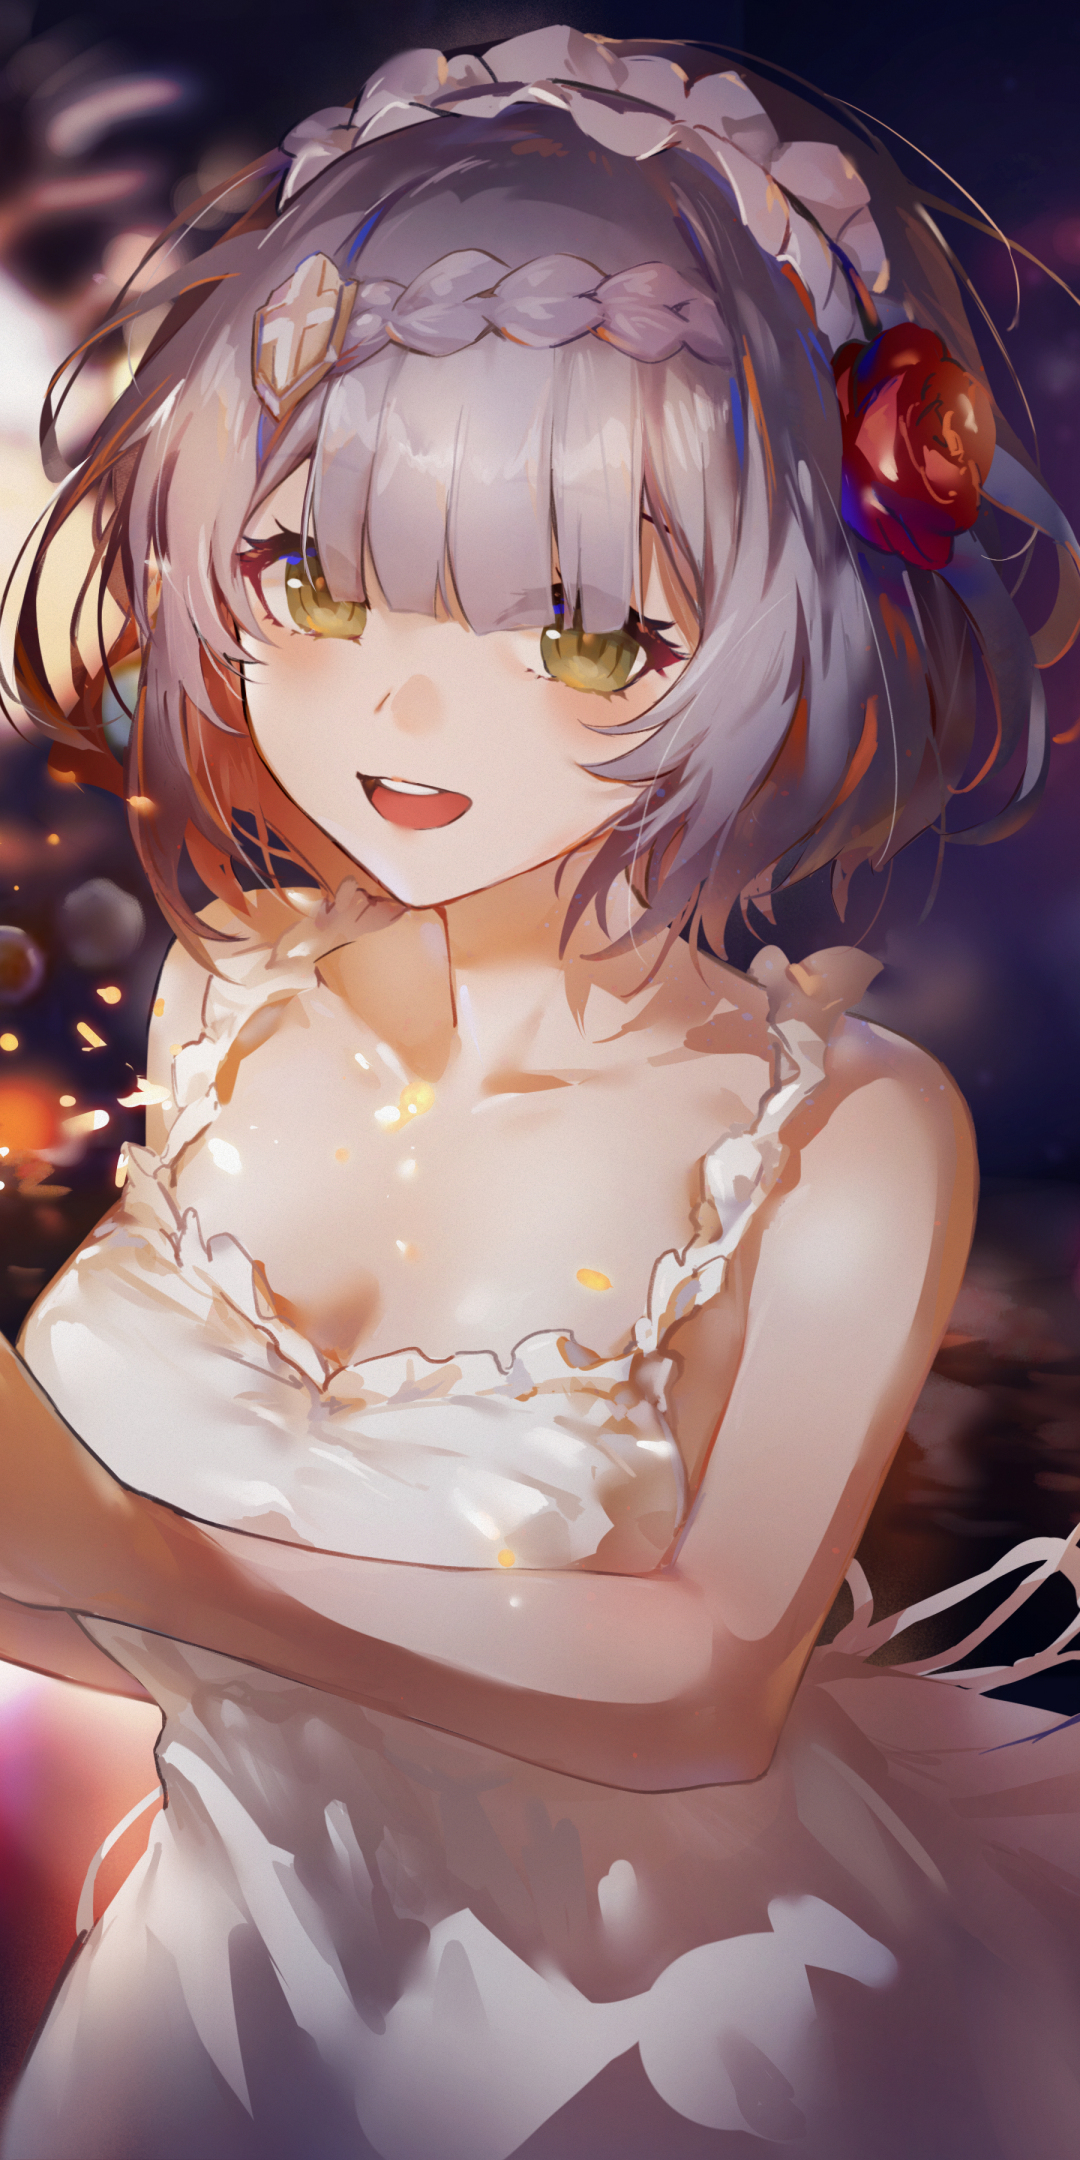 White dress, cute anime girl, art, 1080x2160 wallpaper